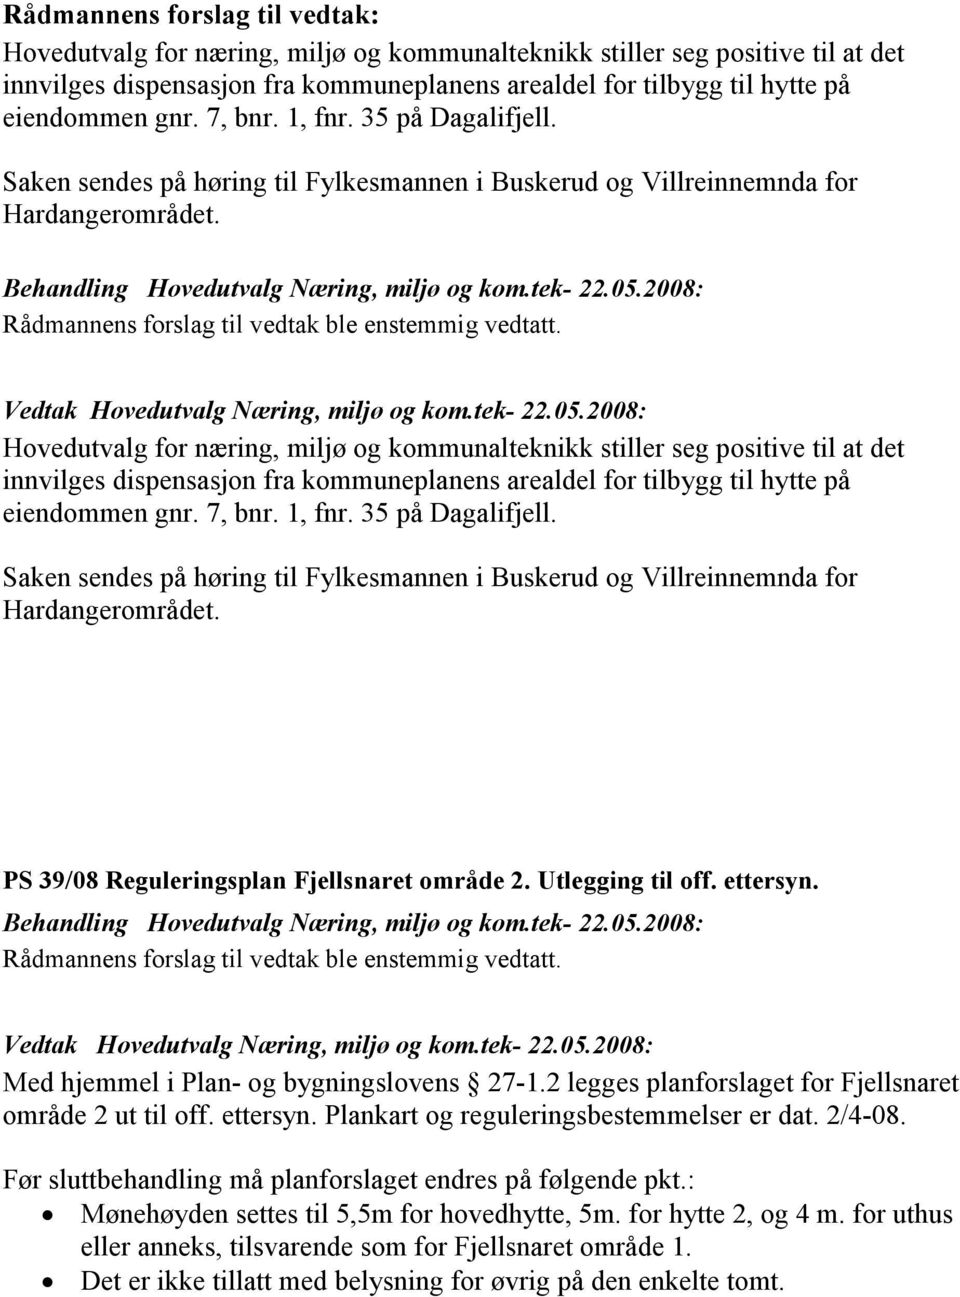 Saken sendes på høring til Fylkesmannen i Buskerud og Villreinnemnda for Hardangerområdet. PS 39/08 Reguleringsplan Fjellsnaret område 2. Utlegging til off. ettersyn.